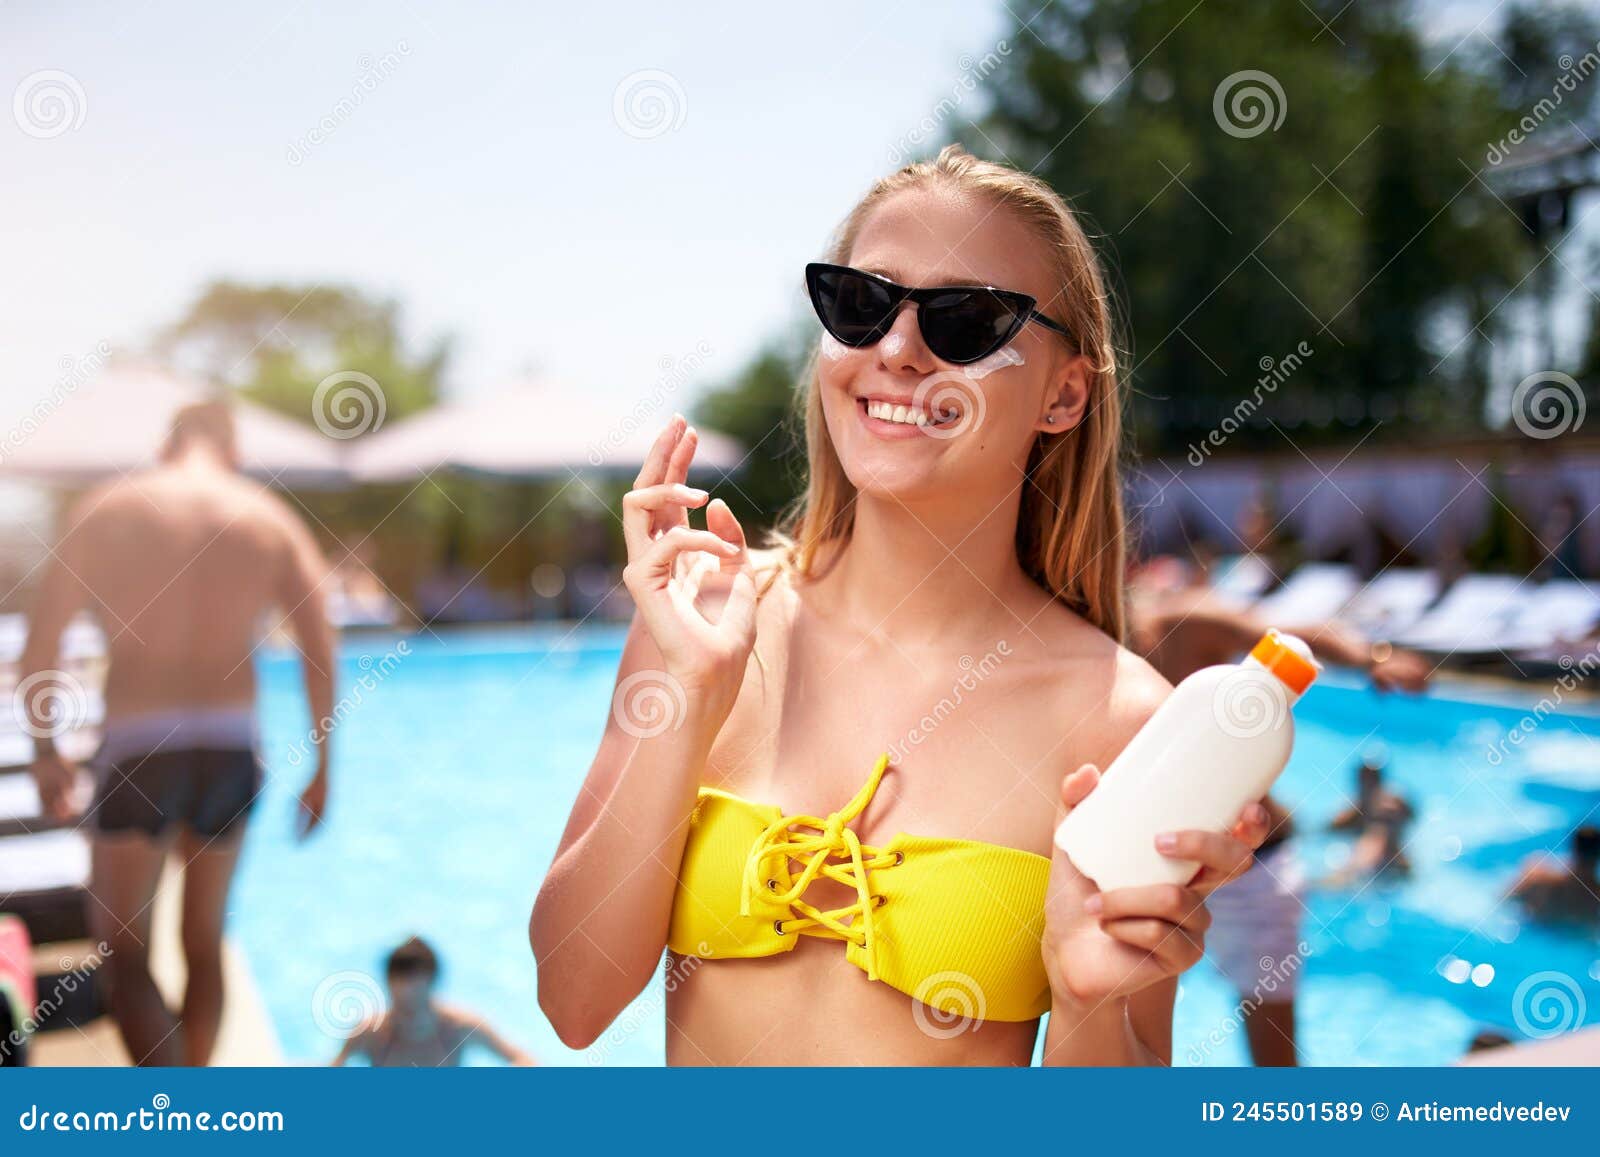 Mujer Rubia Aplica Crema Solar De Protección Solar En Cheeck Y Cara Cerca  De La Piscina. Una Linda Chica Sonriente Pone Crema De S Imagen de archivo  - Imagen de sunbathe, lifestyle: